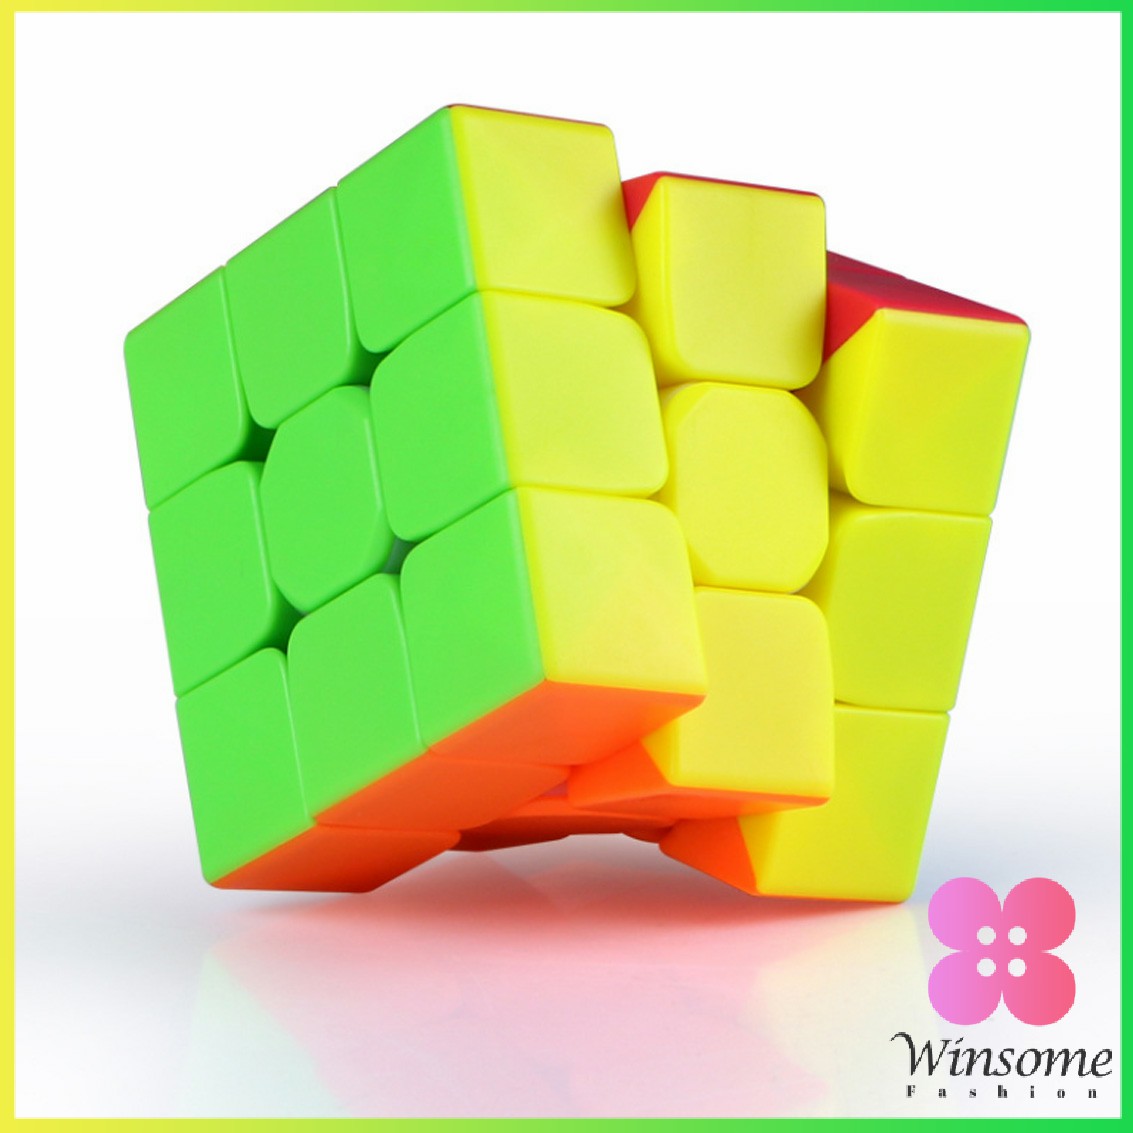 คำอธิบายเพิ่มเติมเกี่ยวกับ Winsome รูบิค 3x3x3 เล่นง่าย ดีไซน์สวย ความเร็วระดับมืออาชีพ รูบิค ลูกบาศก์ ของเล่นลับสมอง Twist P Rubik's Cube & MF3RS Racing Cube